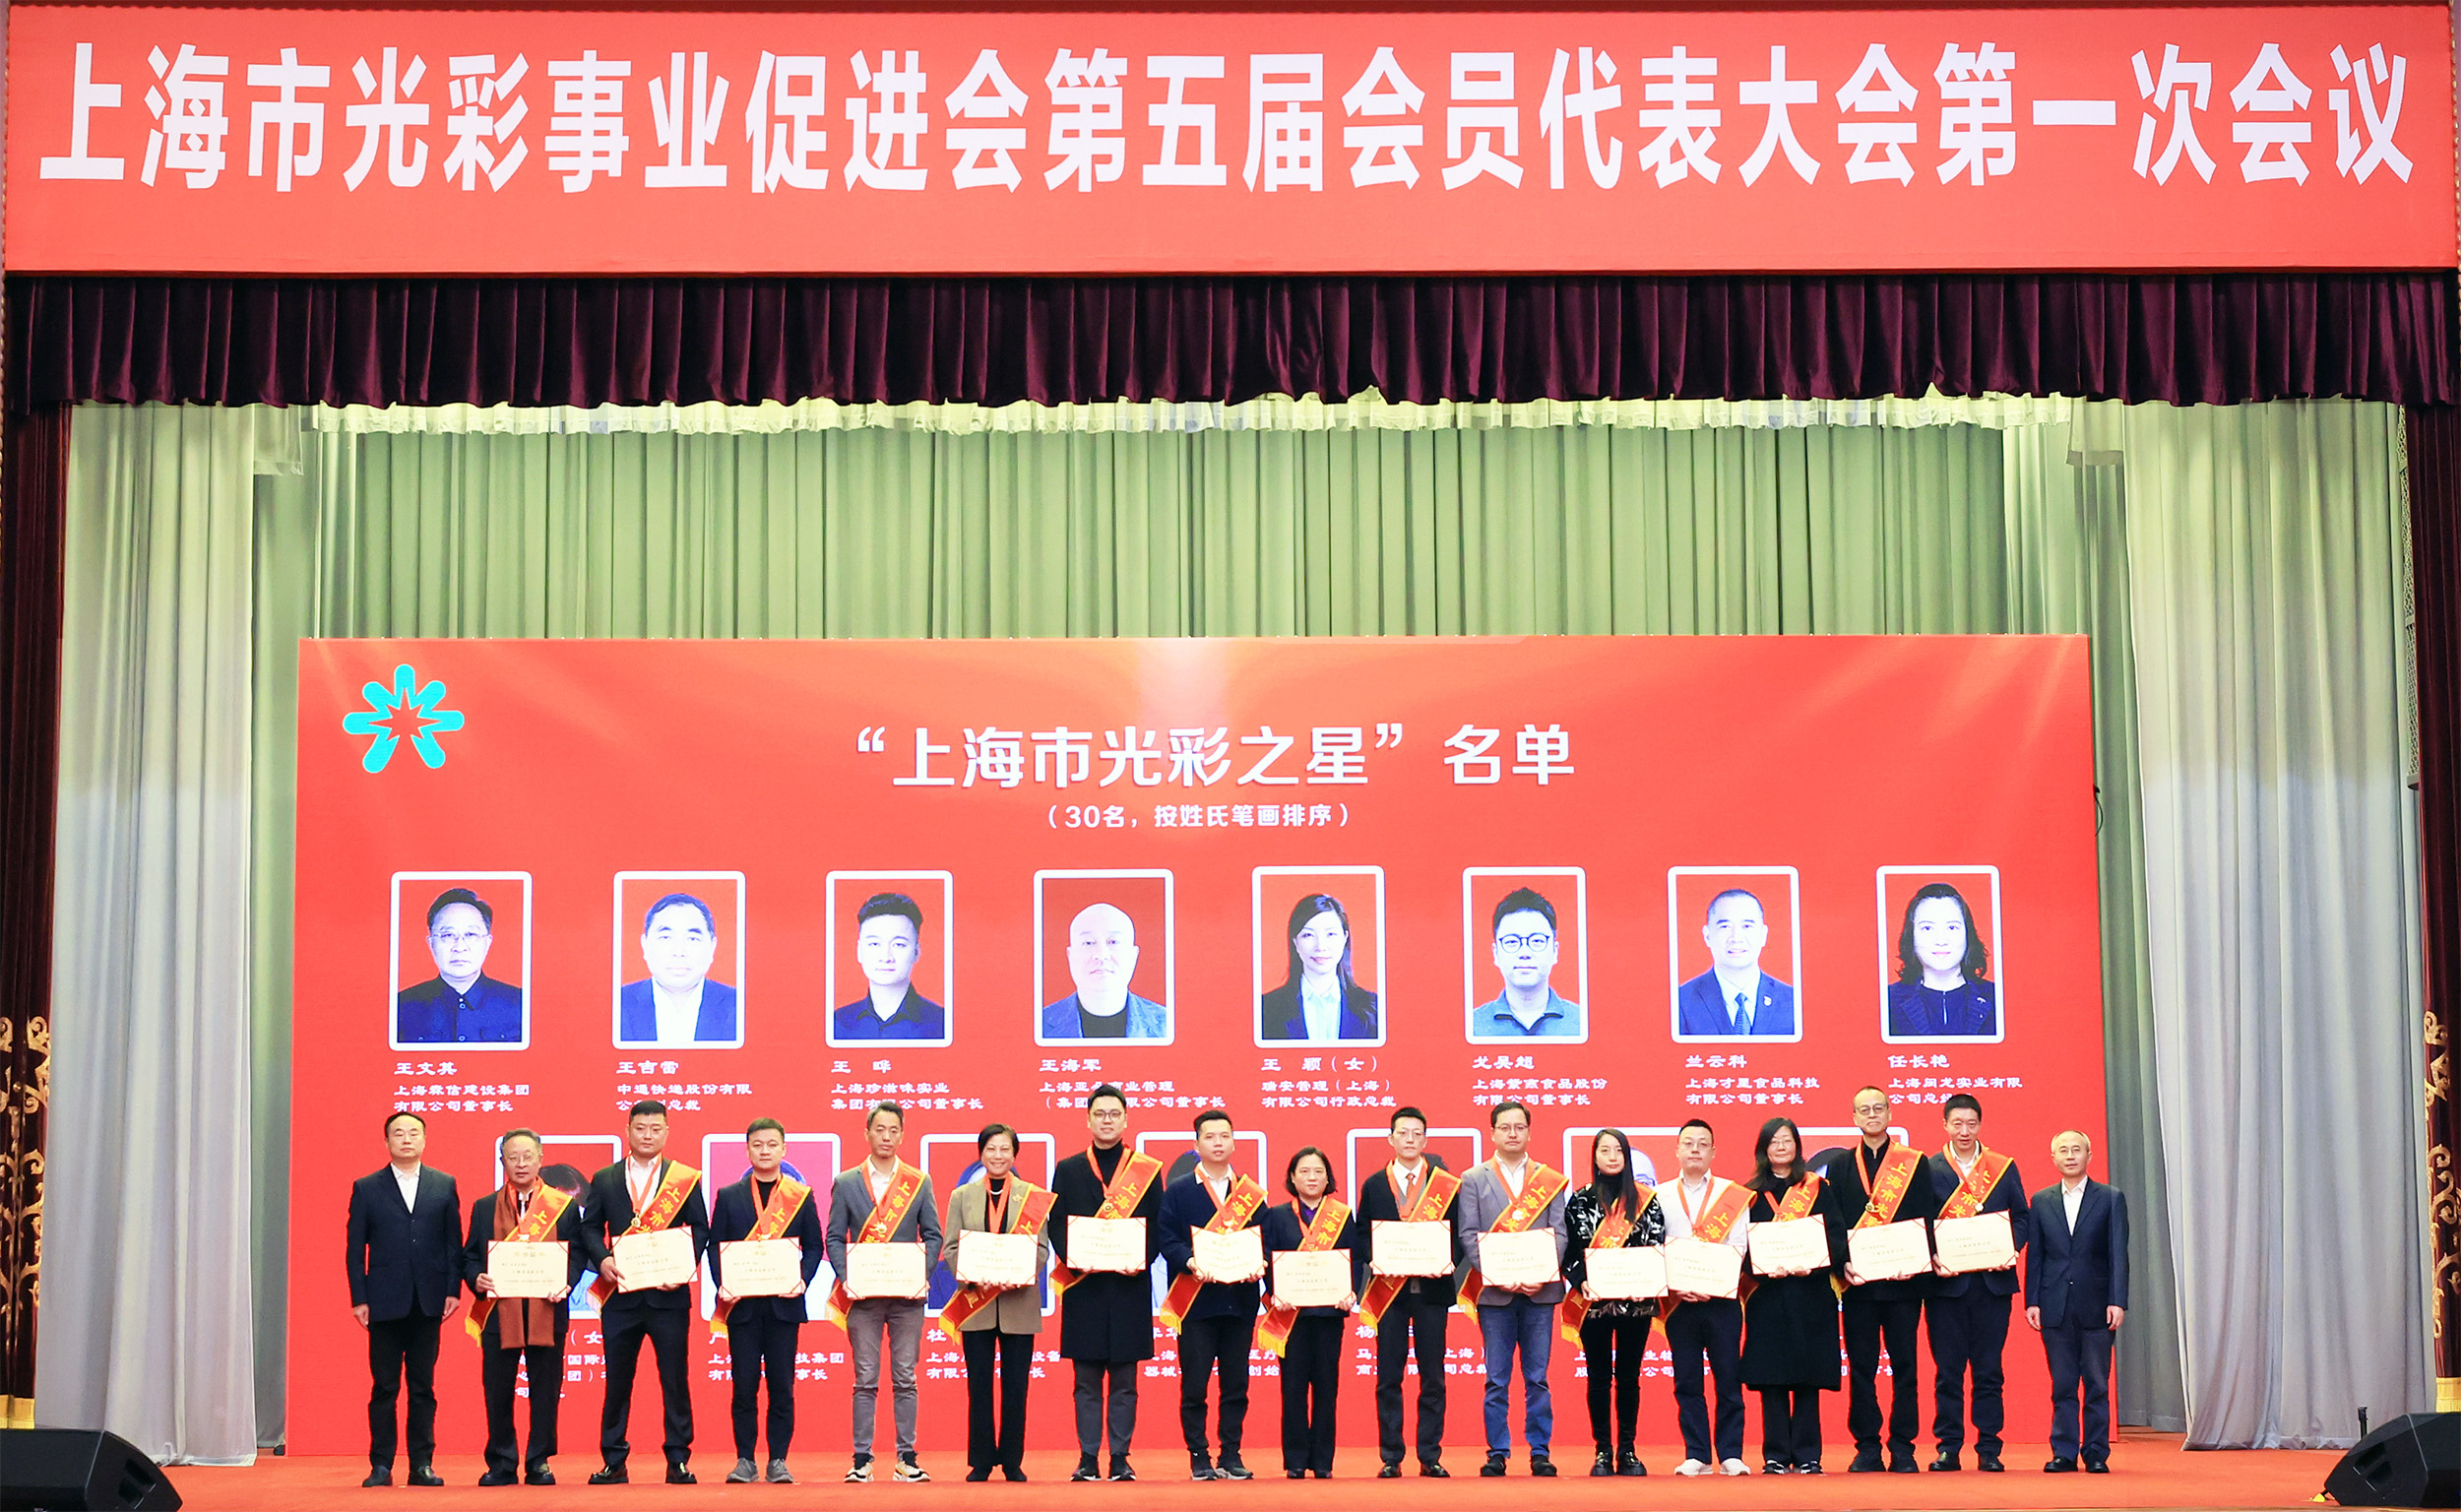 致盛集团董事长张润斌当选上海市光彩事业促进会副会长，并荣获“上海市光彩之星”称号